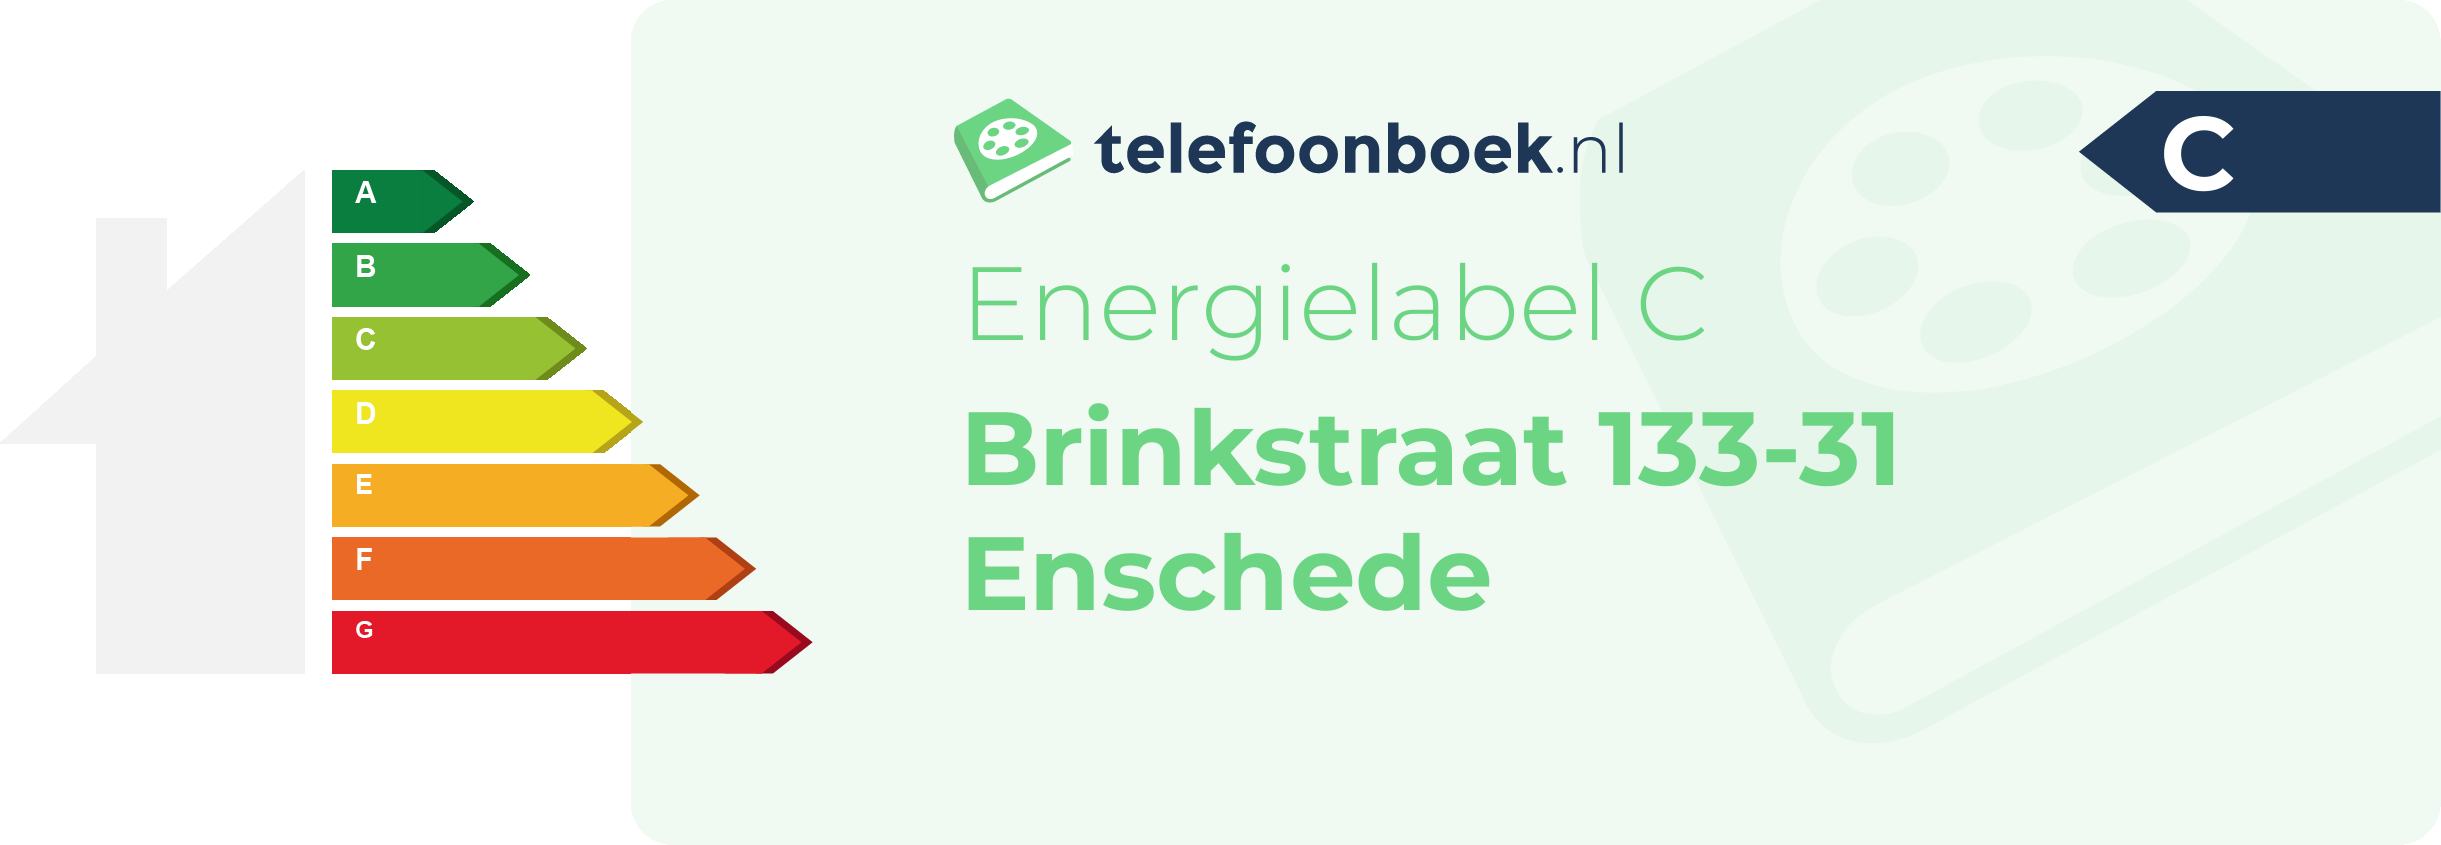 Energielabel Brinkstraat 133-31 Enschede